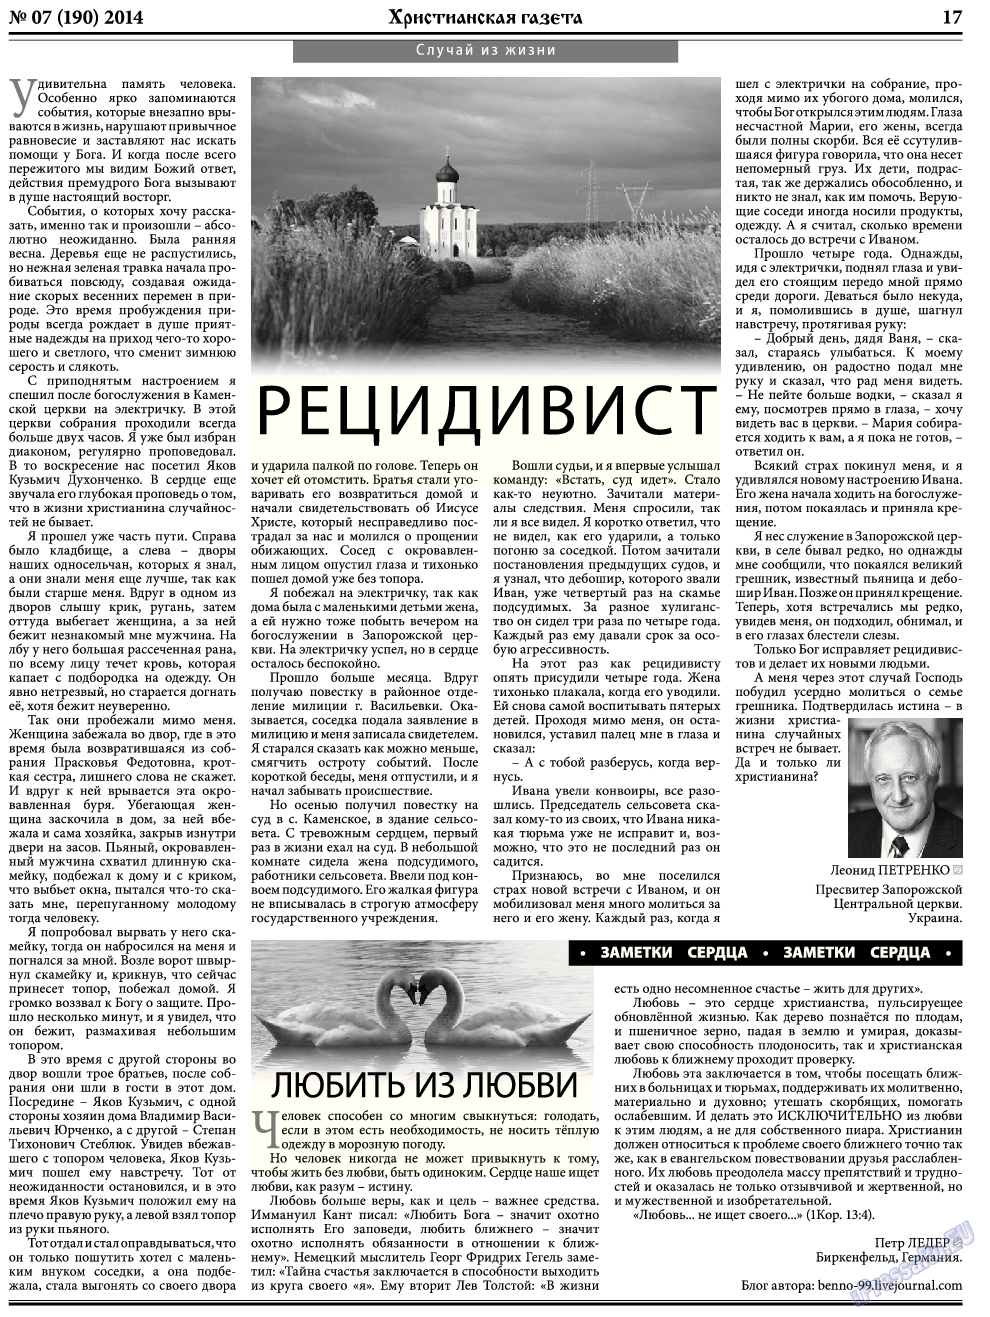 Христианская газета, газета. 2014 №7 стр.25